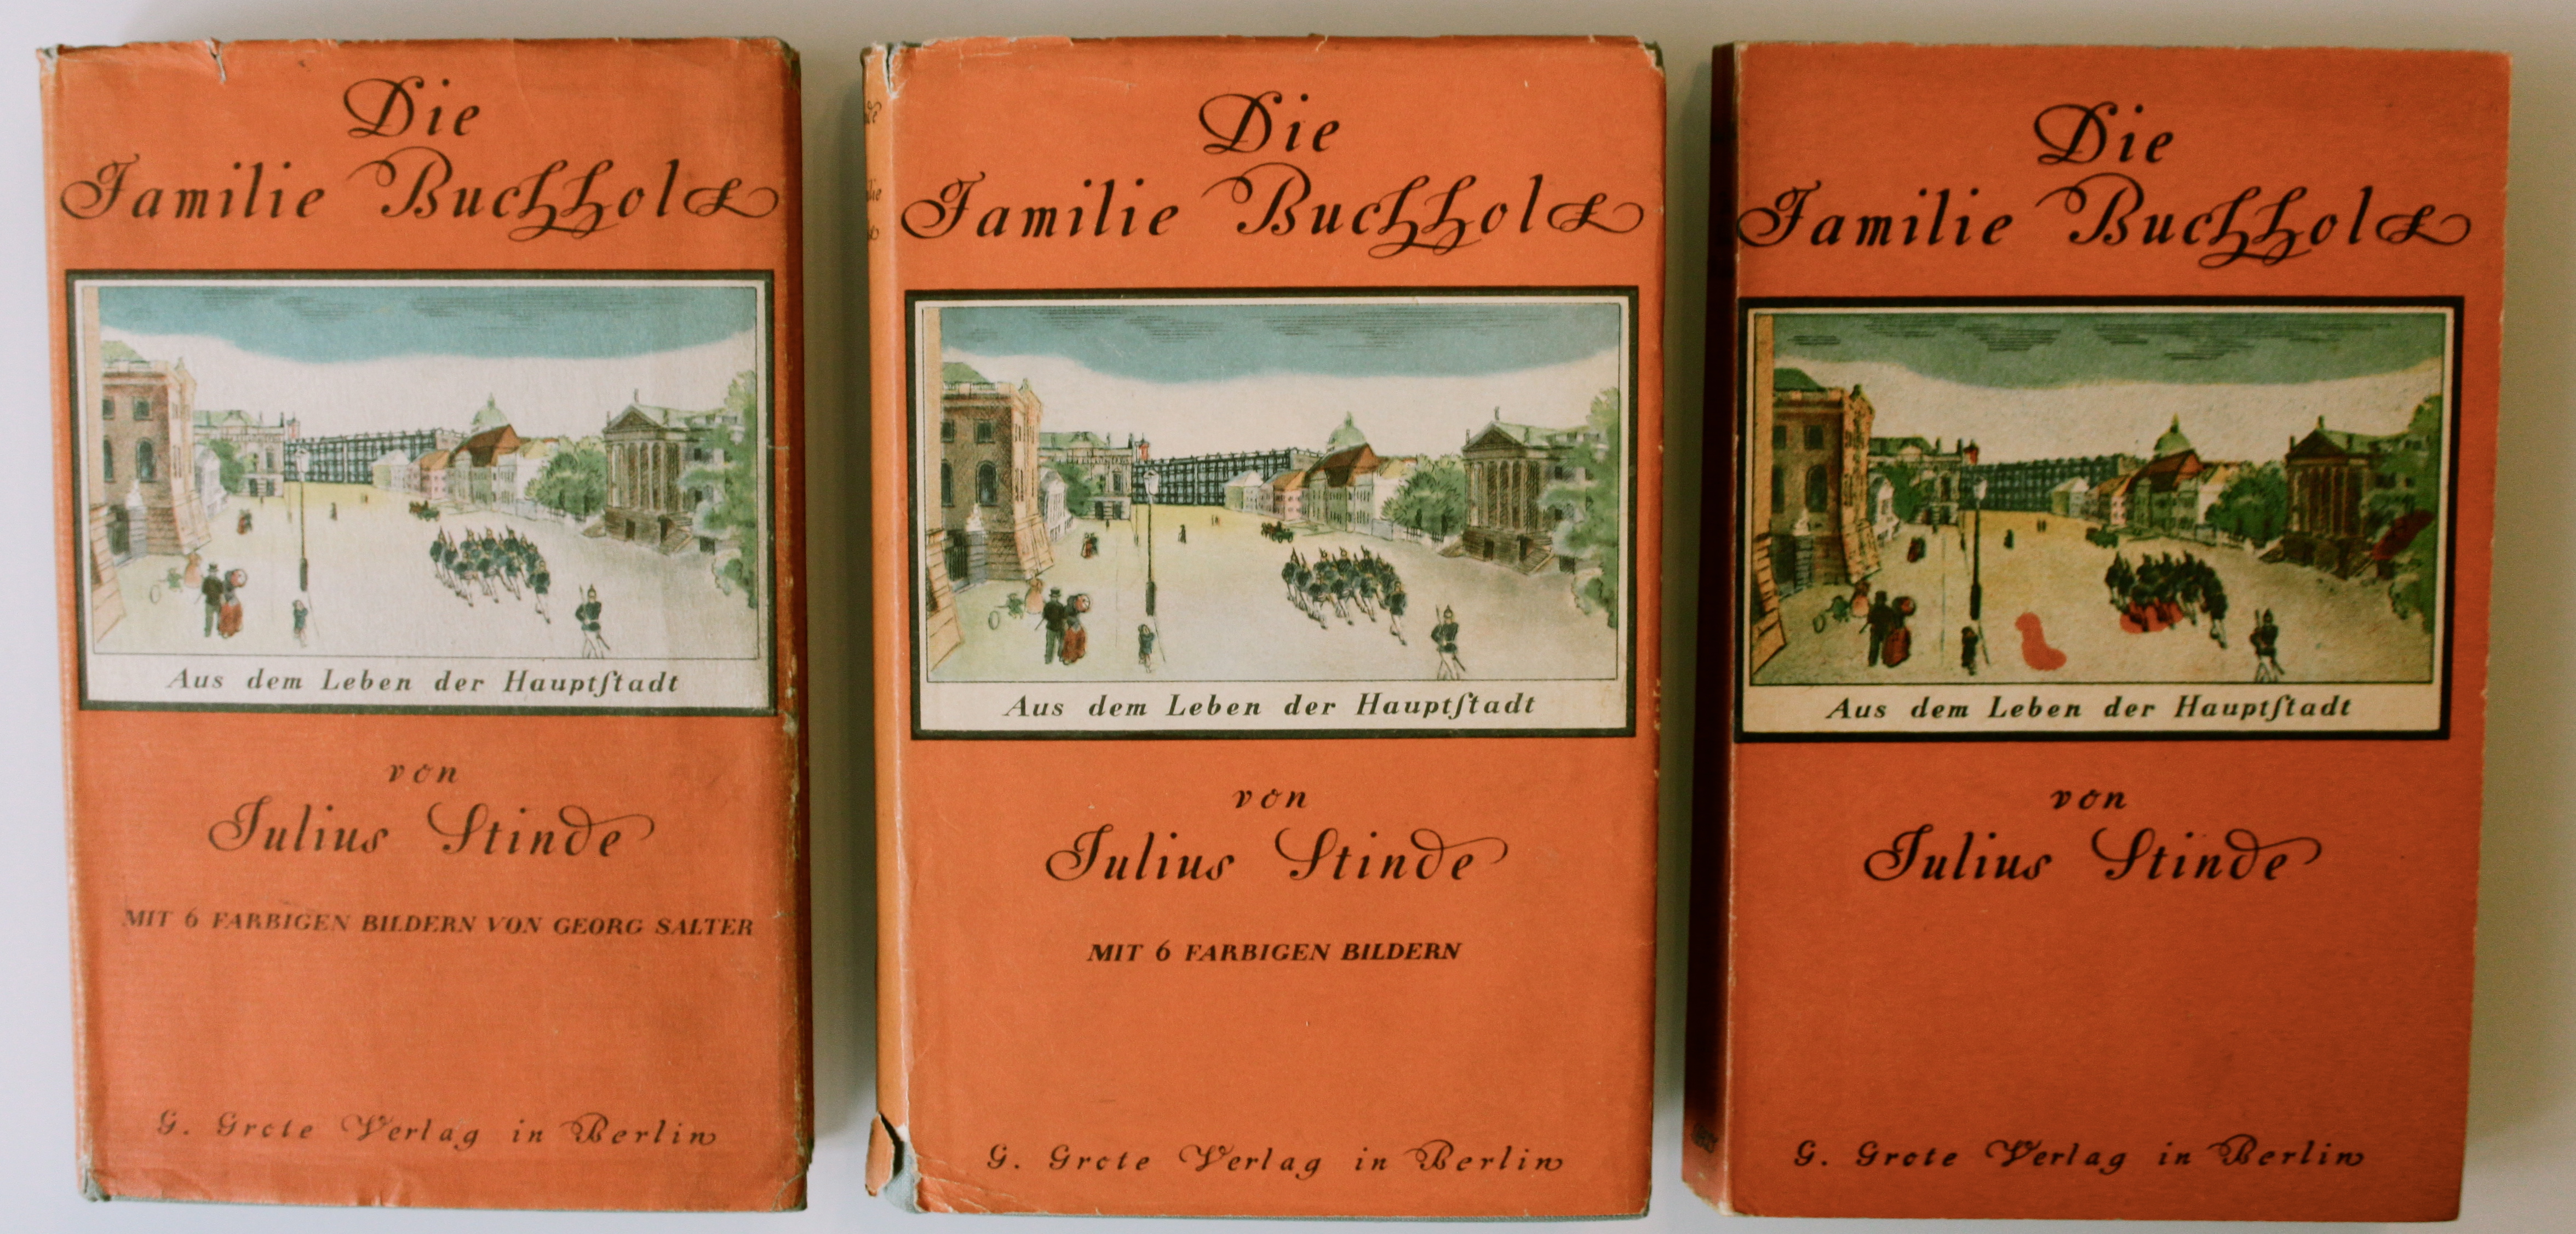 Die Familie Buchholz. Aus dem Leben der Hauptstadt. Ausgaben 1932, 1939 und 1944